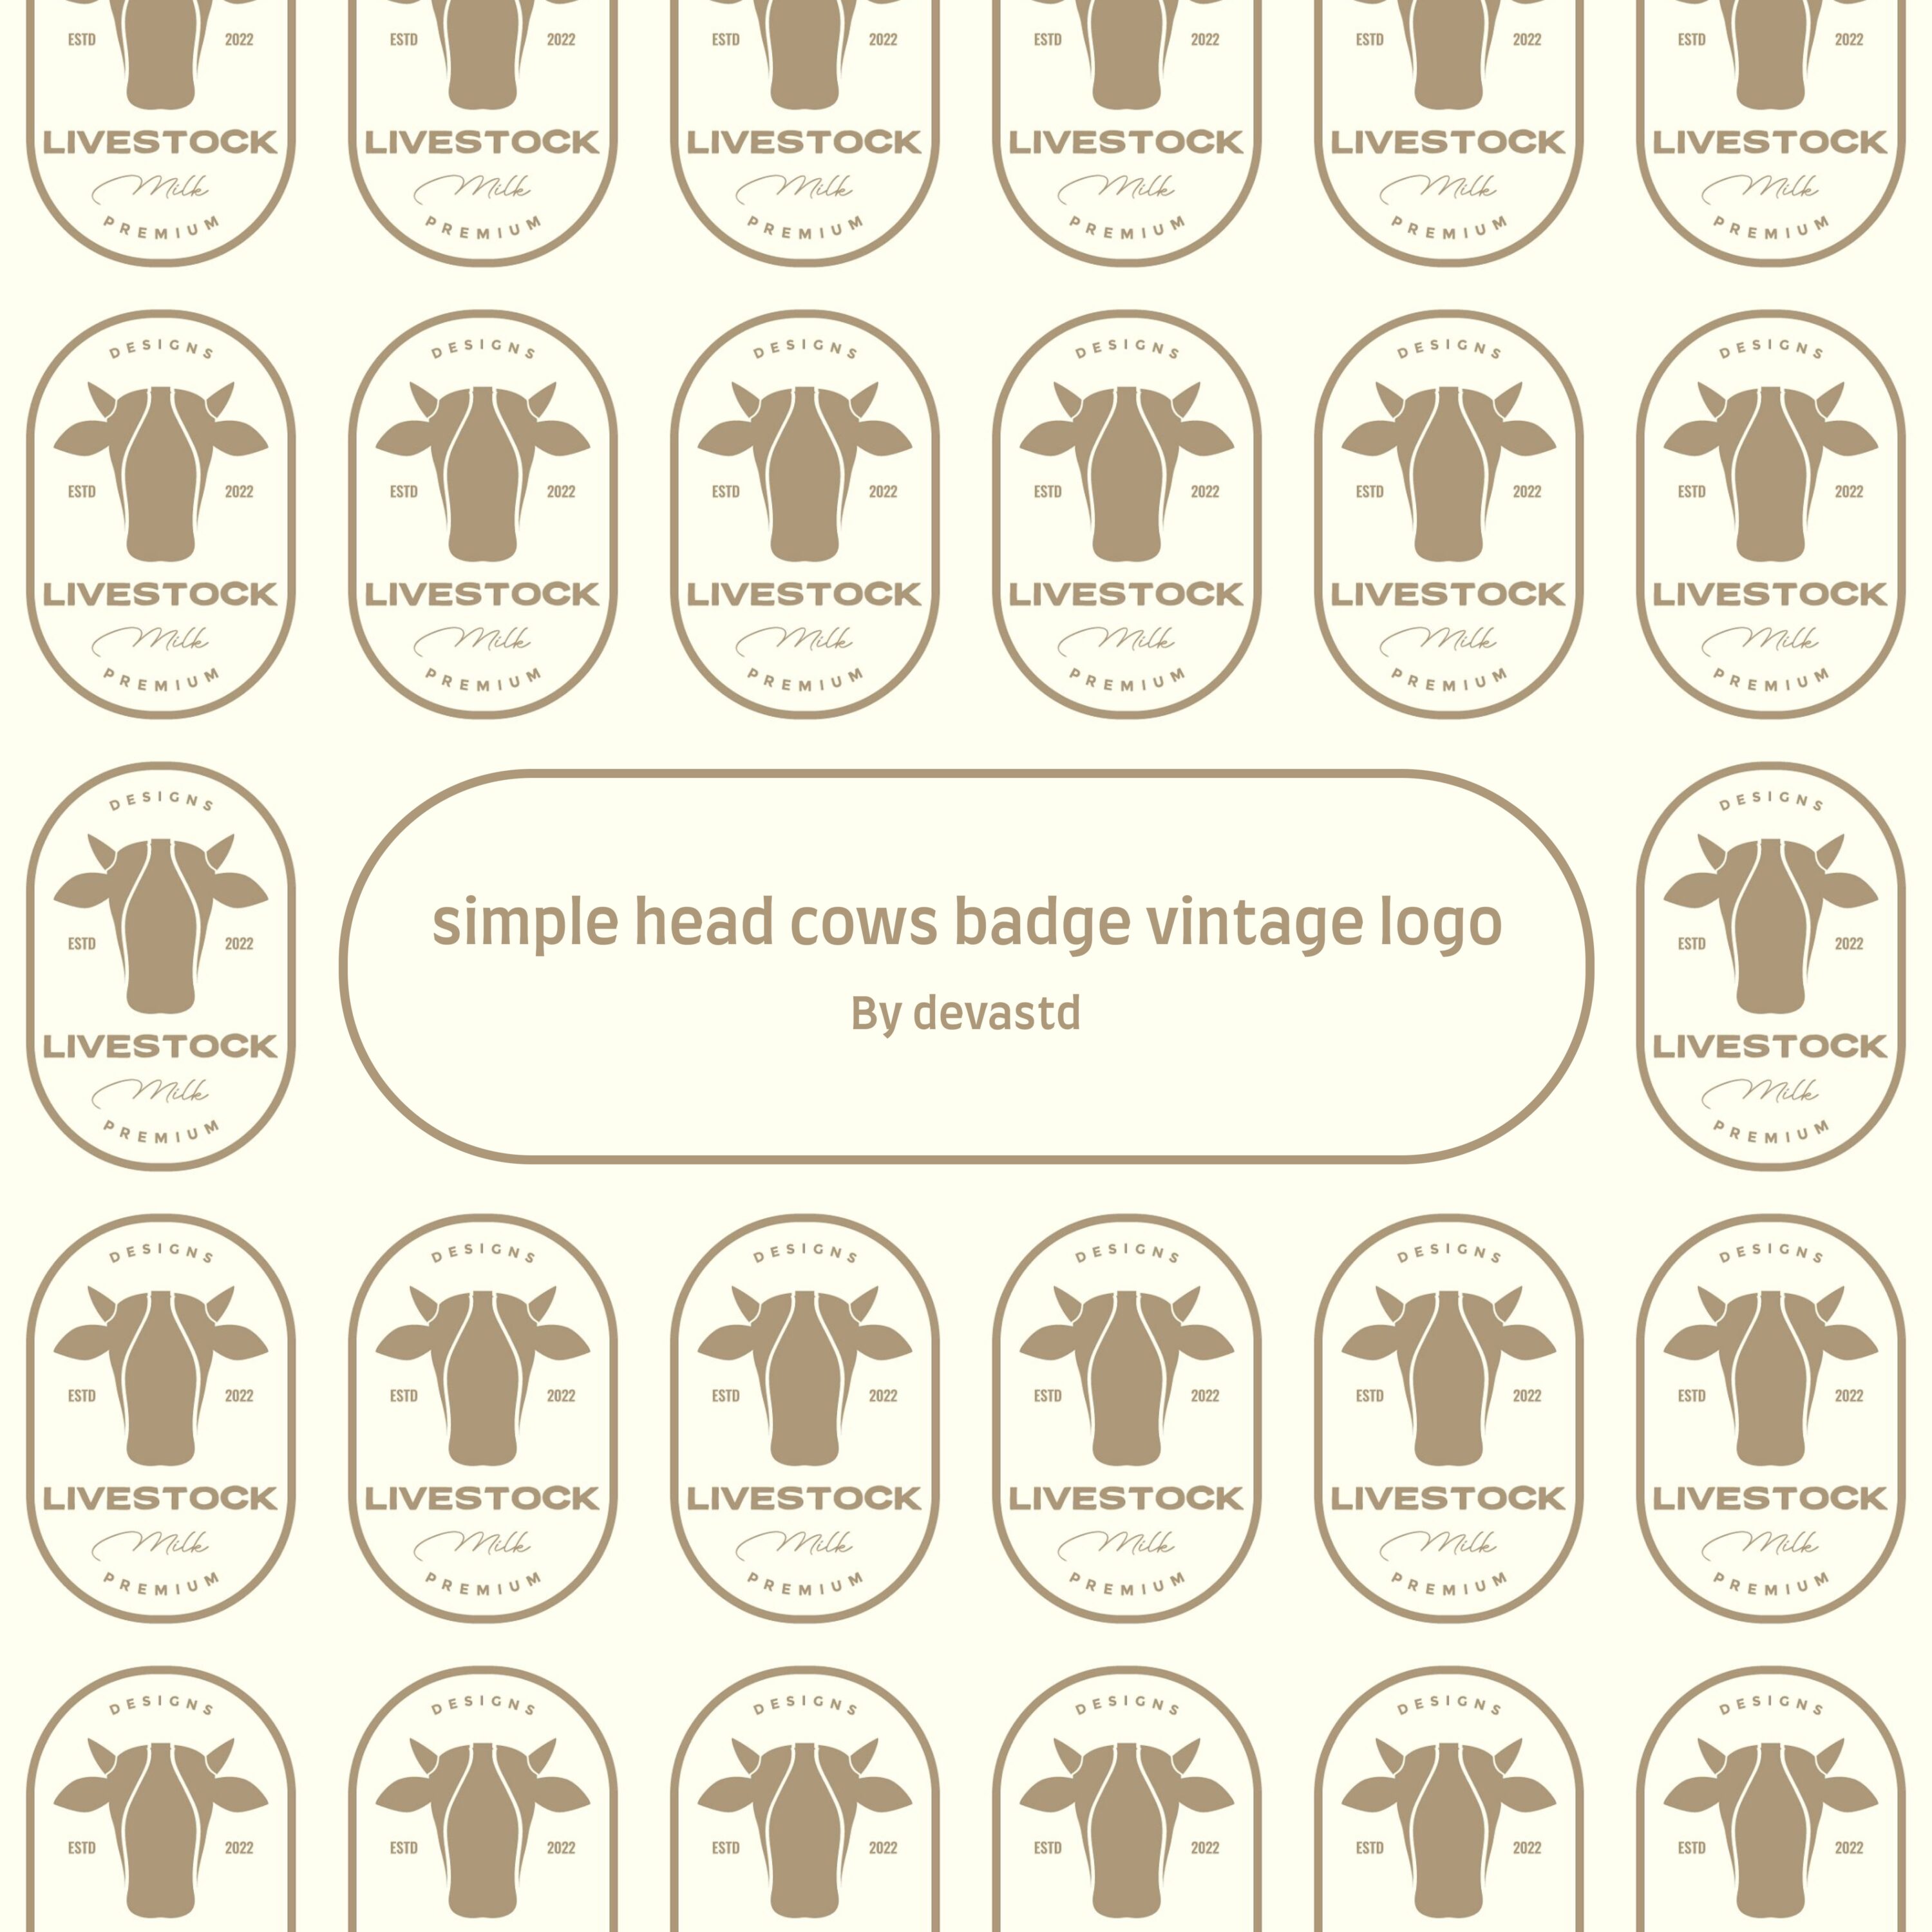 simple head cows badge vintage logo.